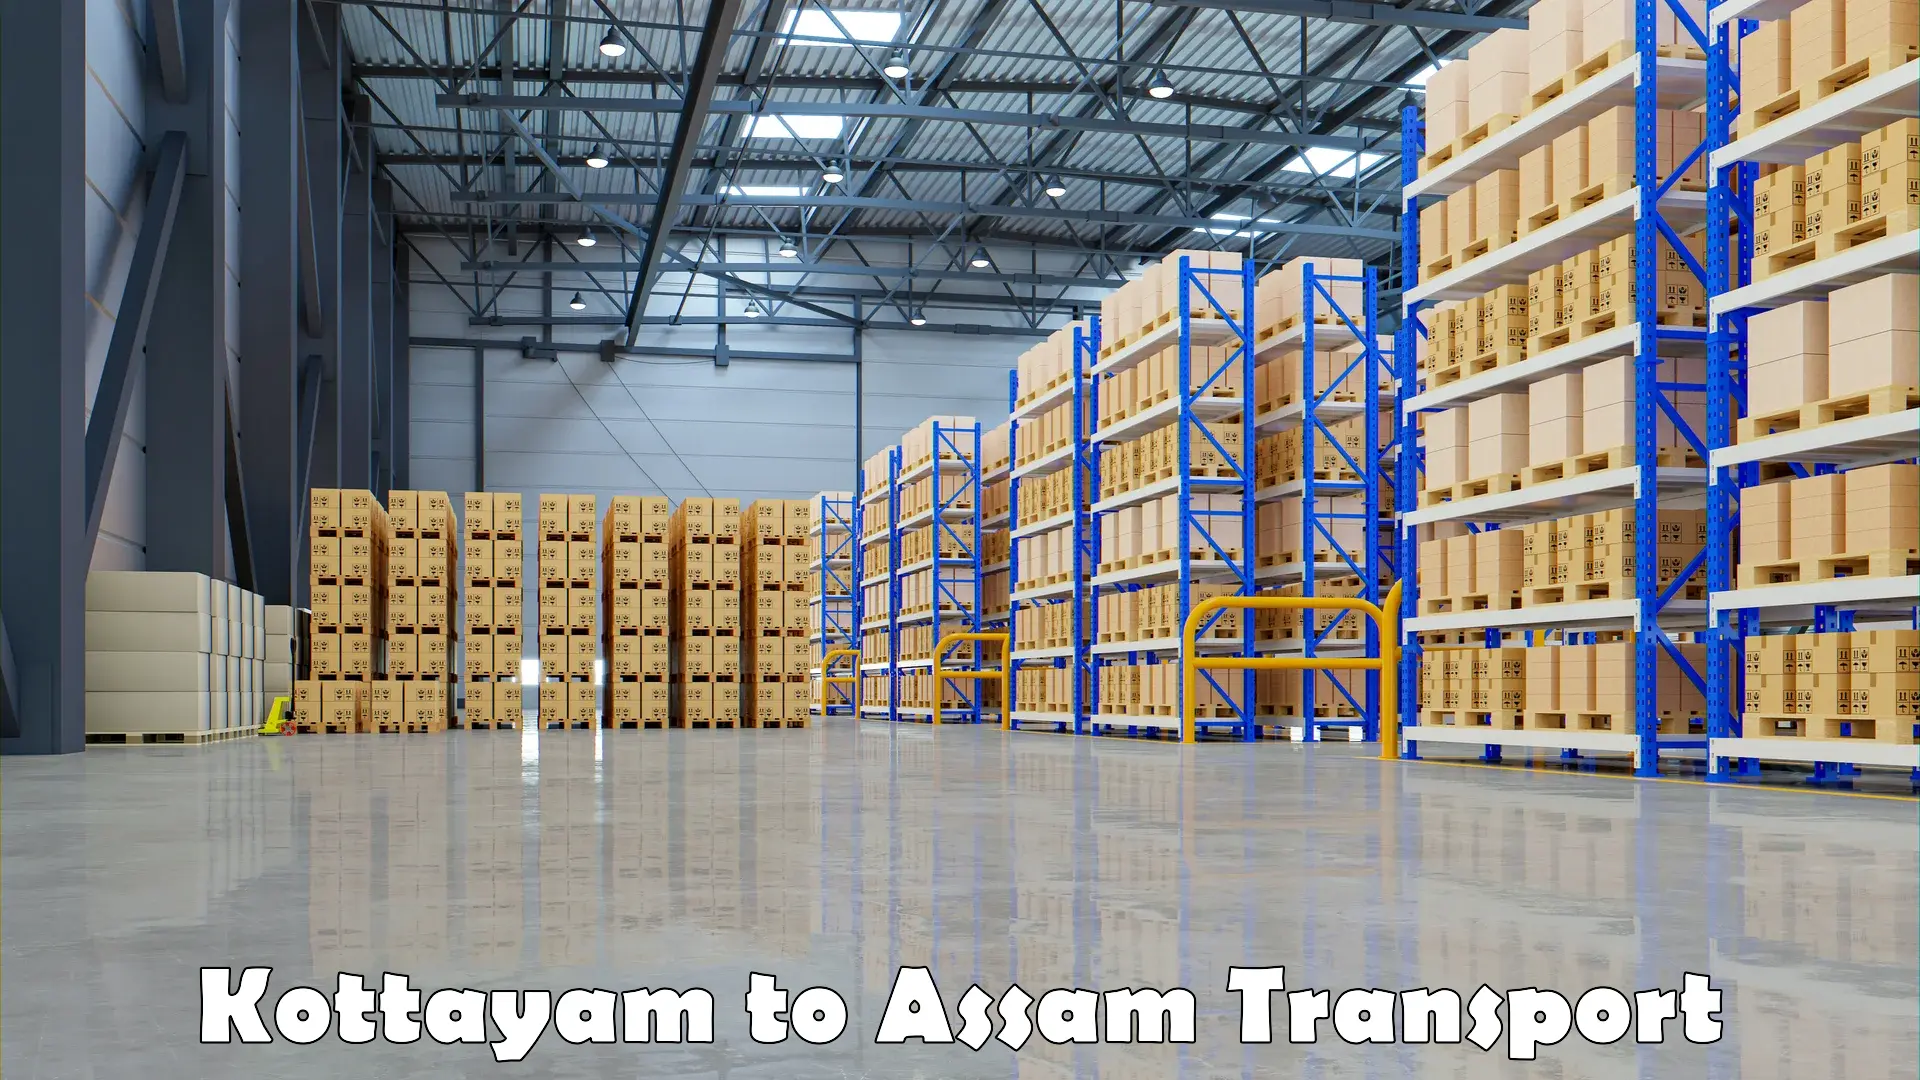 Shipping partner Kottayam to Panchgram